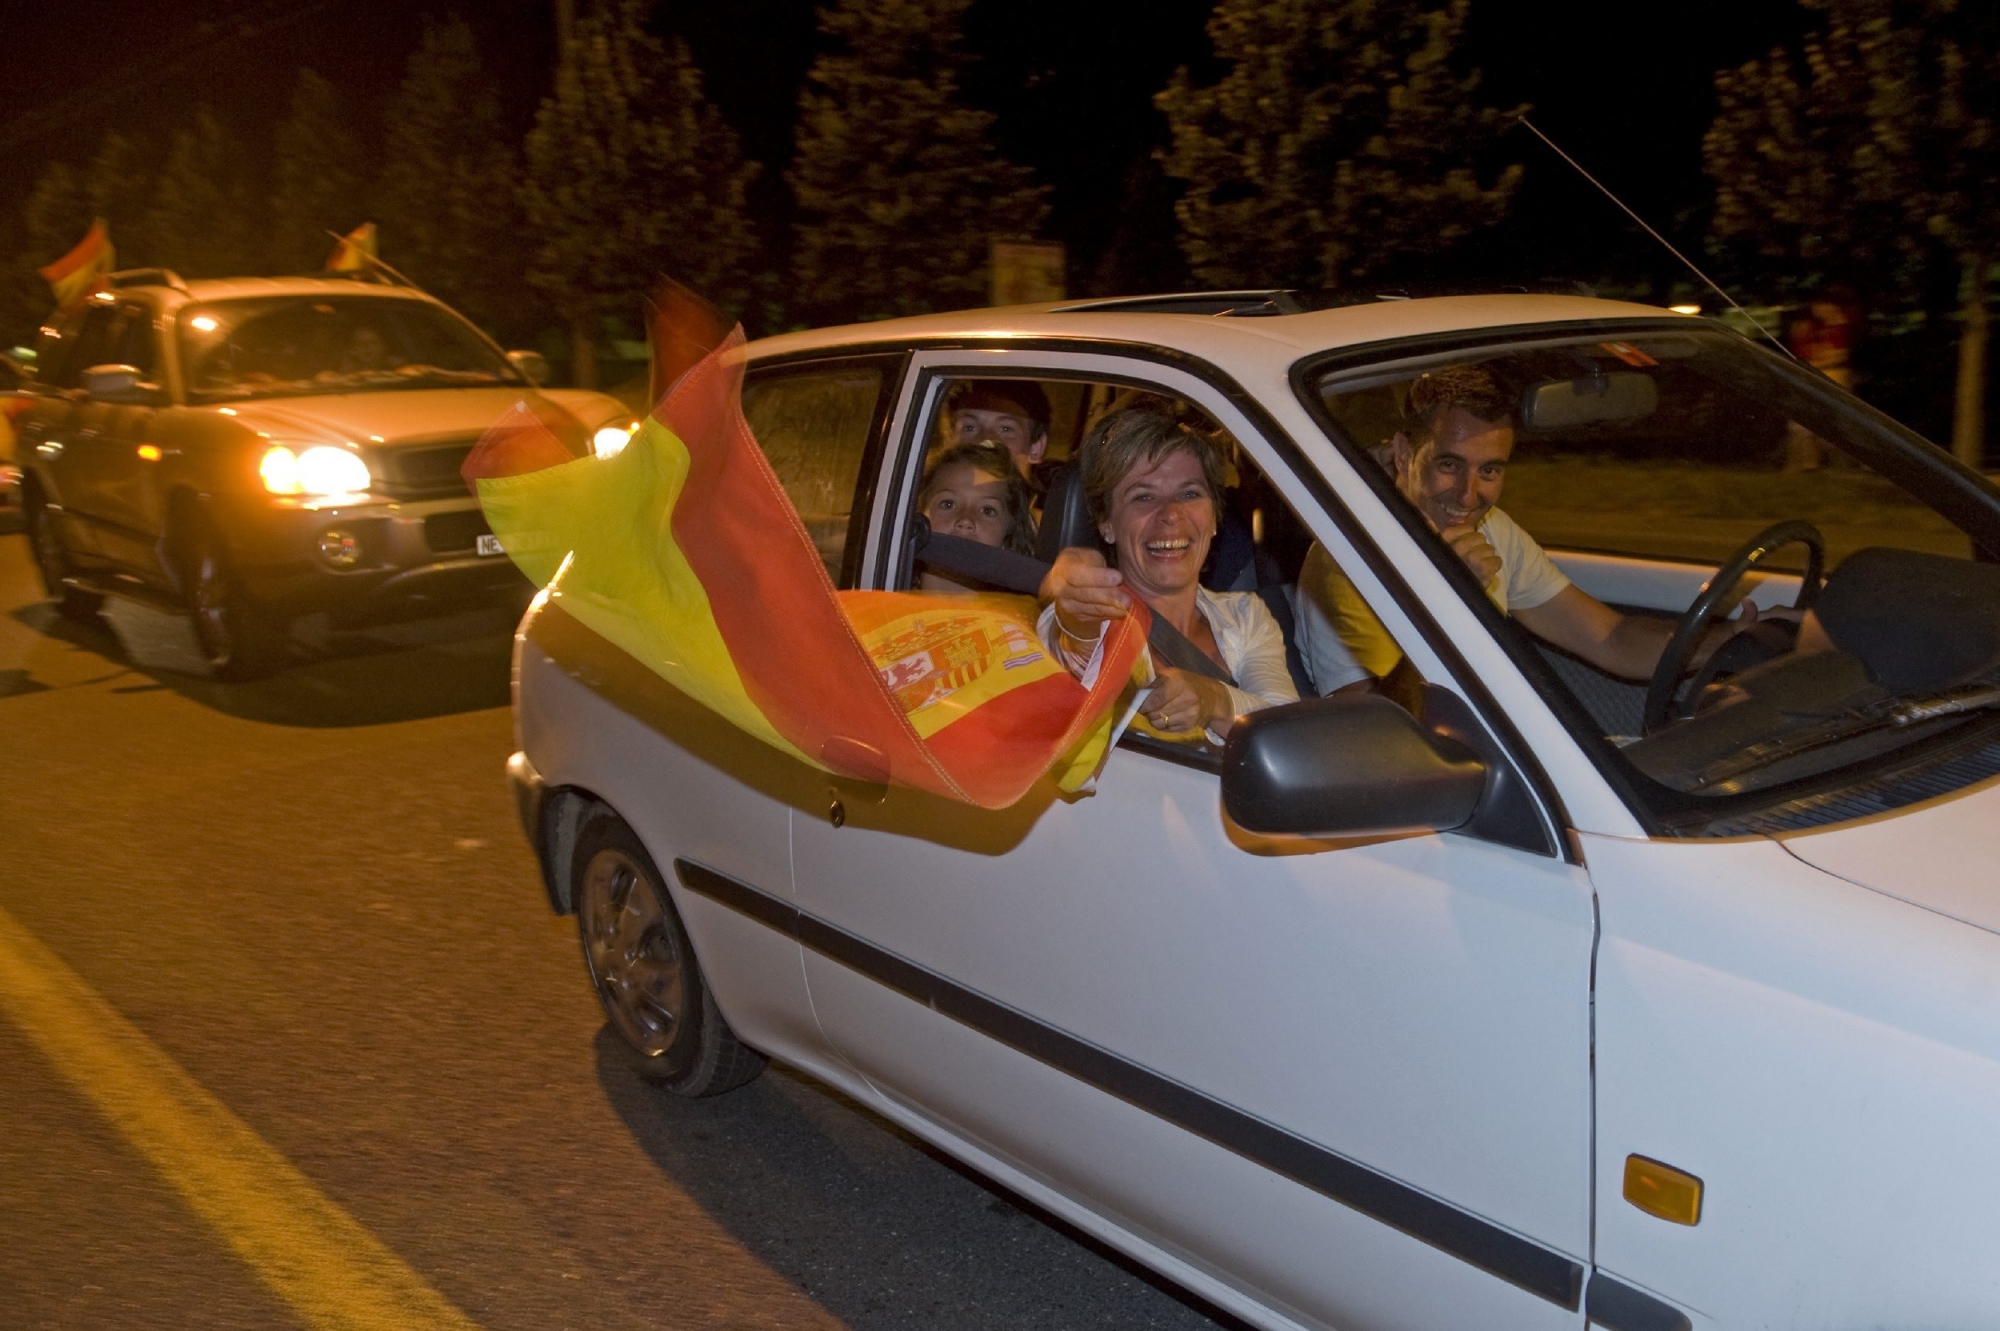 En 2010 à Neuchâtel après la finale entre les Pays-Bas et l'Espagne, qui avait gagné 1 à zéro. Dans la voiture, les fans ont le droit de manifester leur joie avec coups de klaxon et drapeaux pendant une heure. En respectant les règles de circulation. 